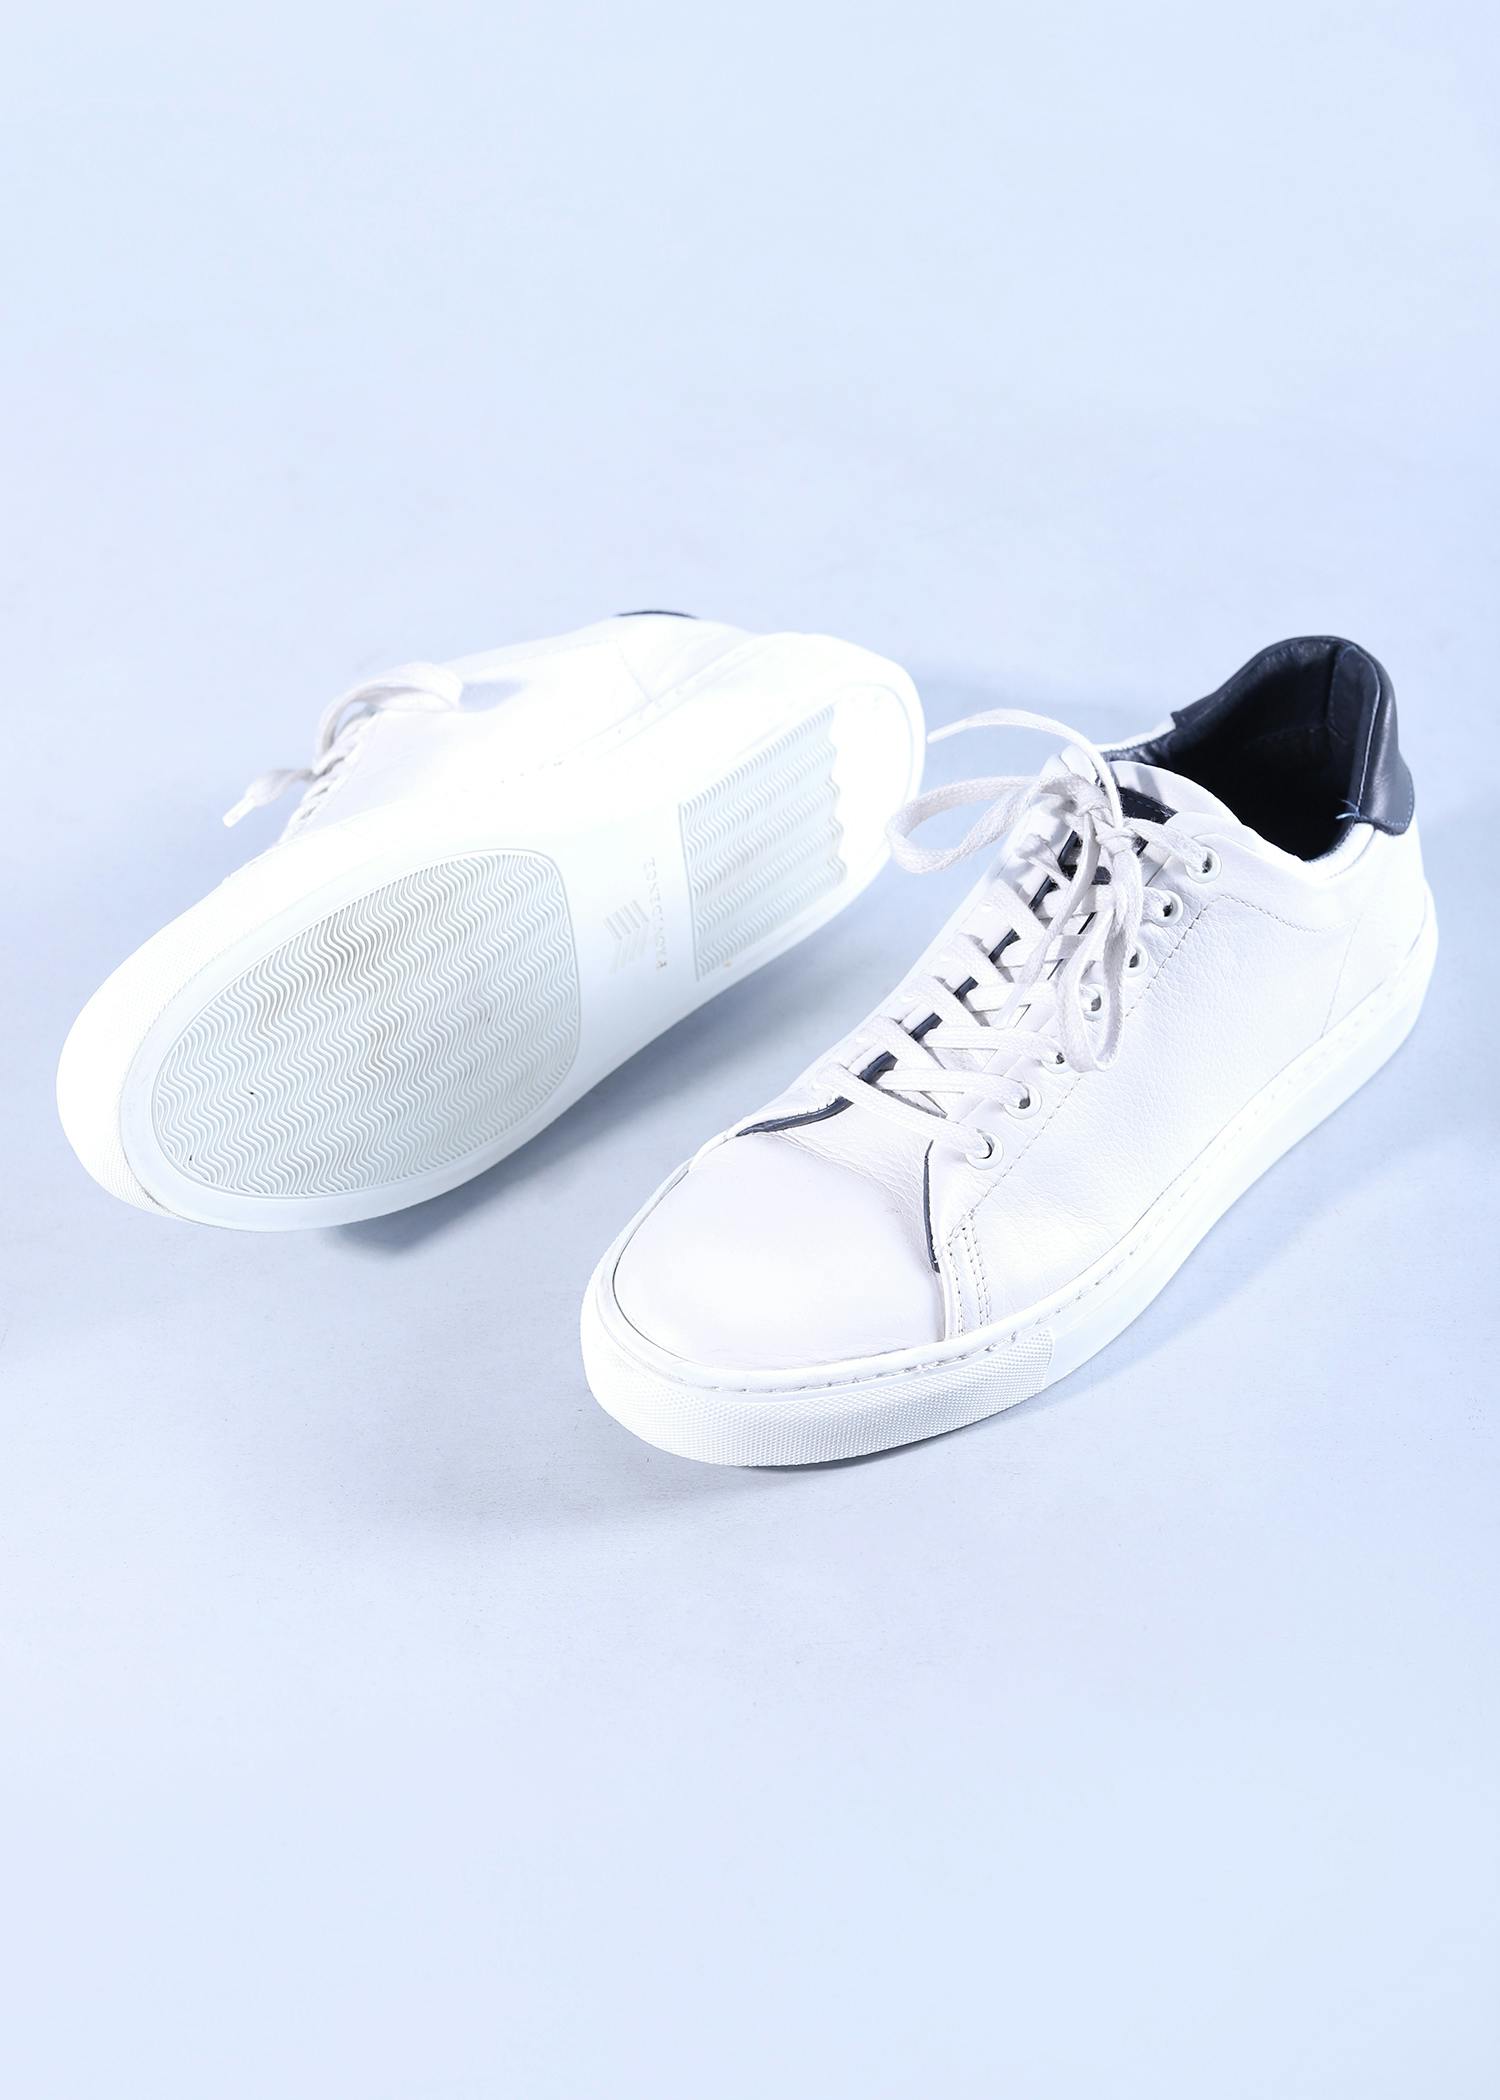 snow rabbit mens shoes white color sole